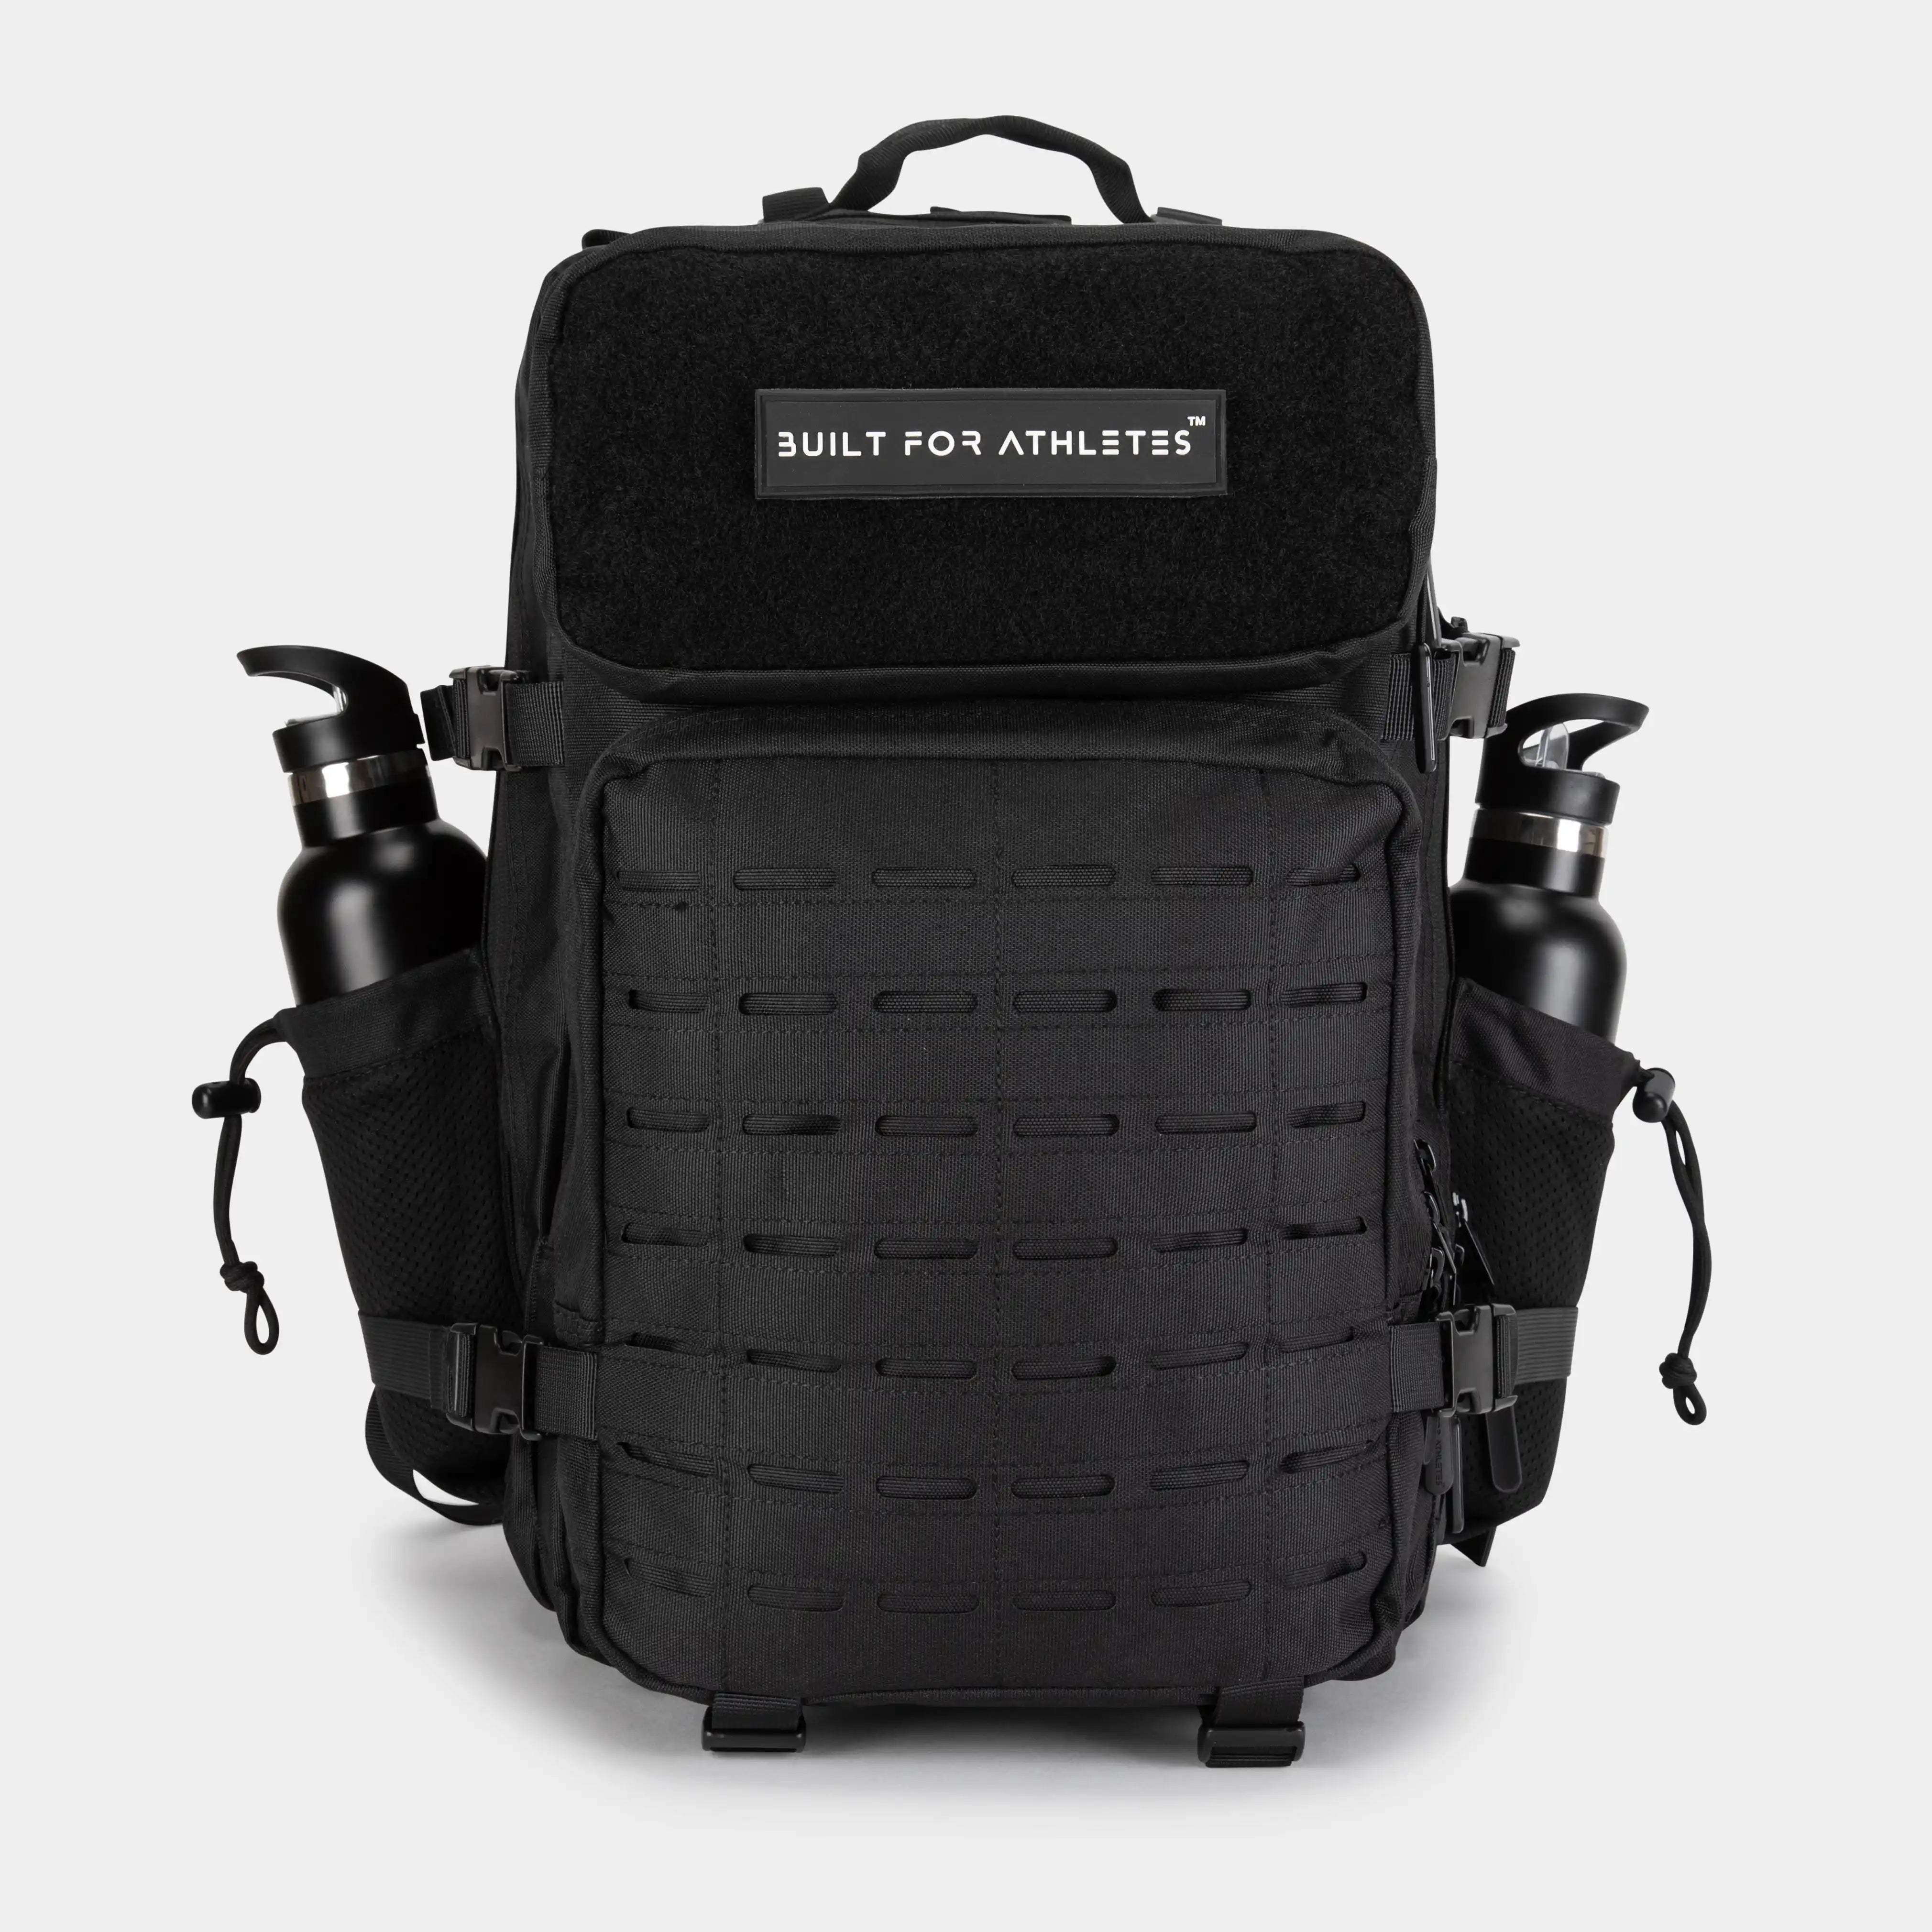 Built for Athletes Backpacks FIIT Backpack 45L